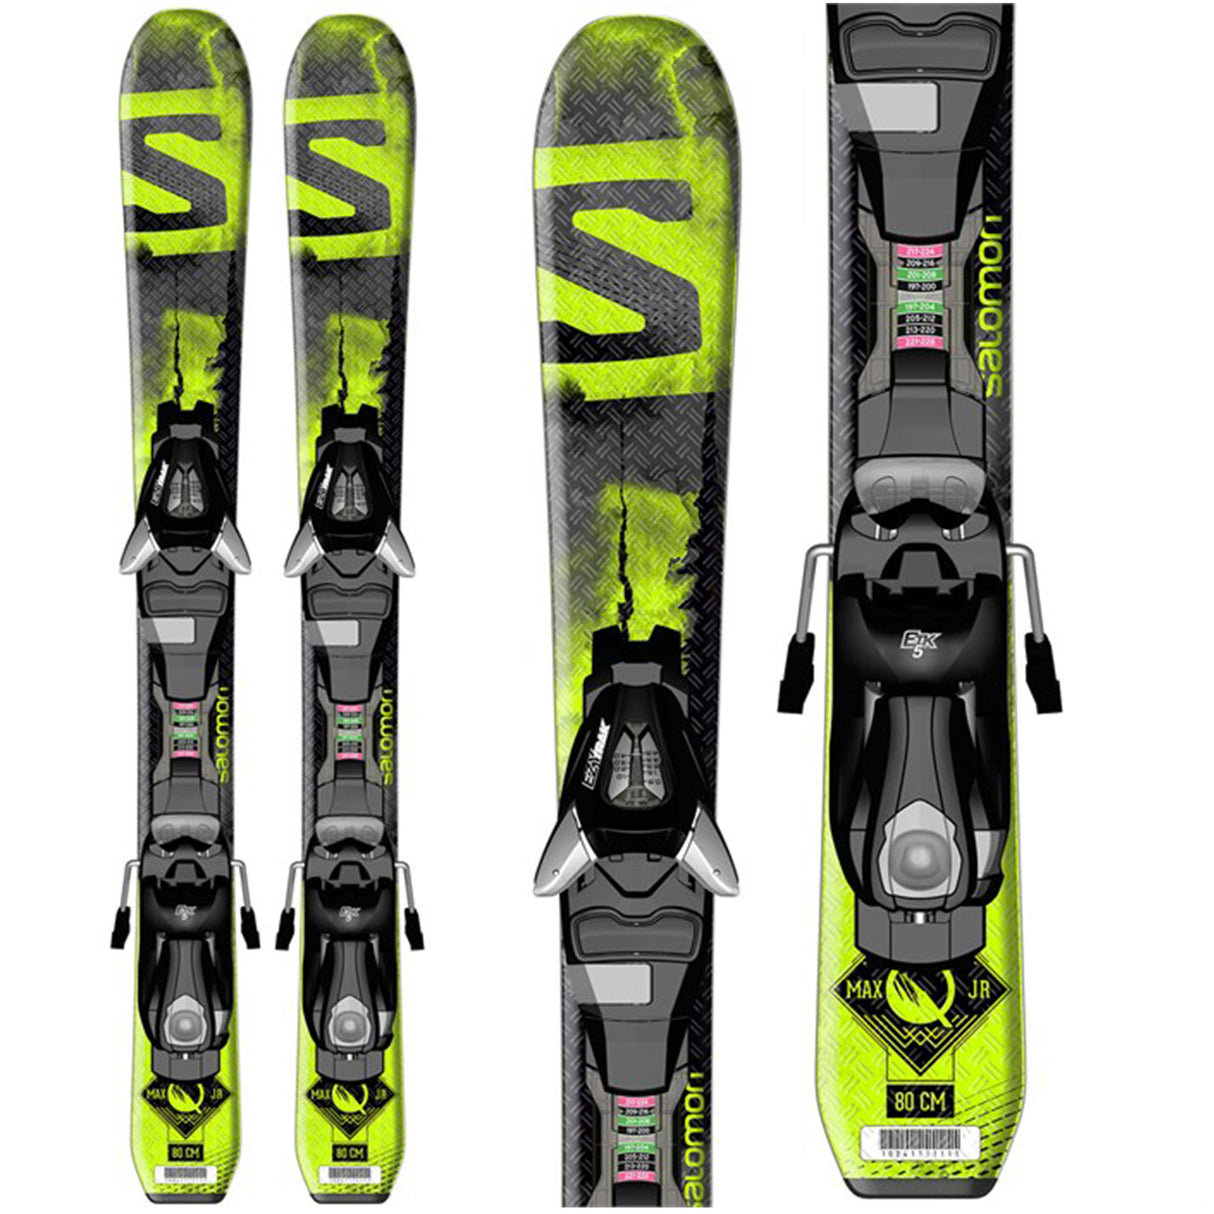 Salomon Q-Max Jr XS Skis Including Ezytrak 5 Binding